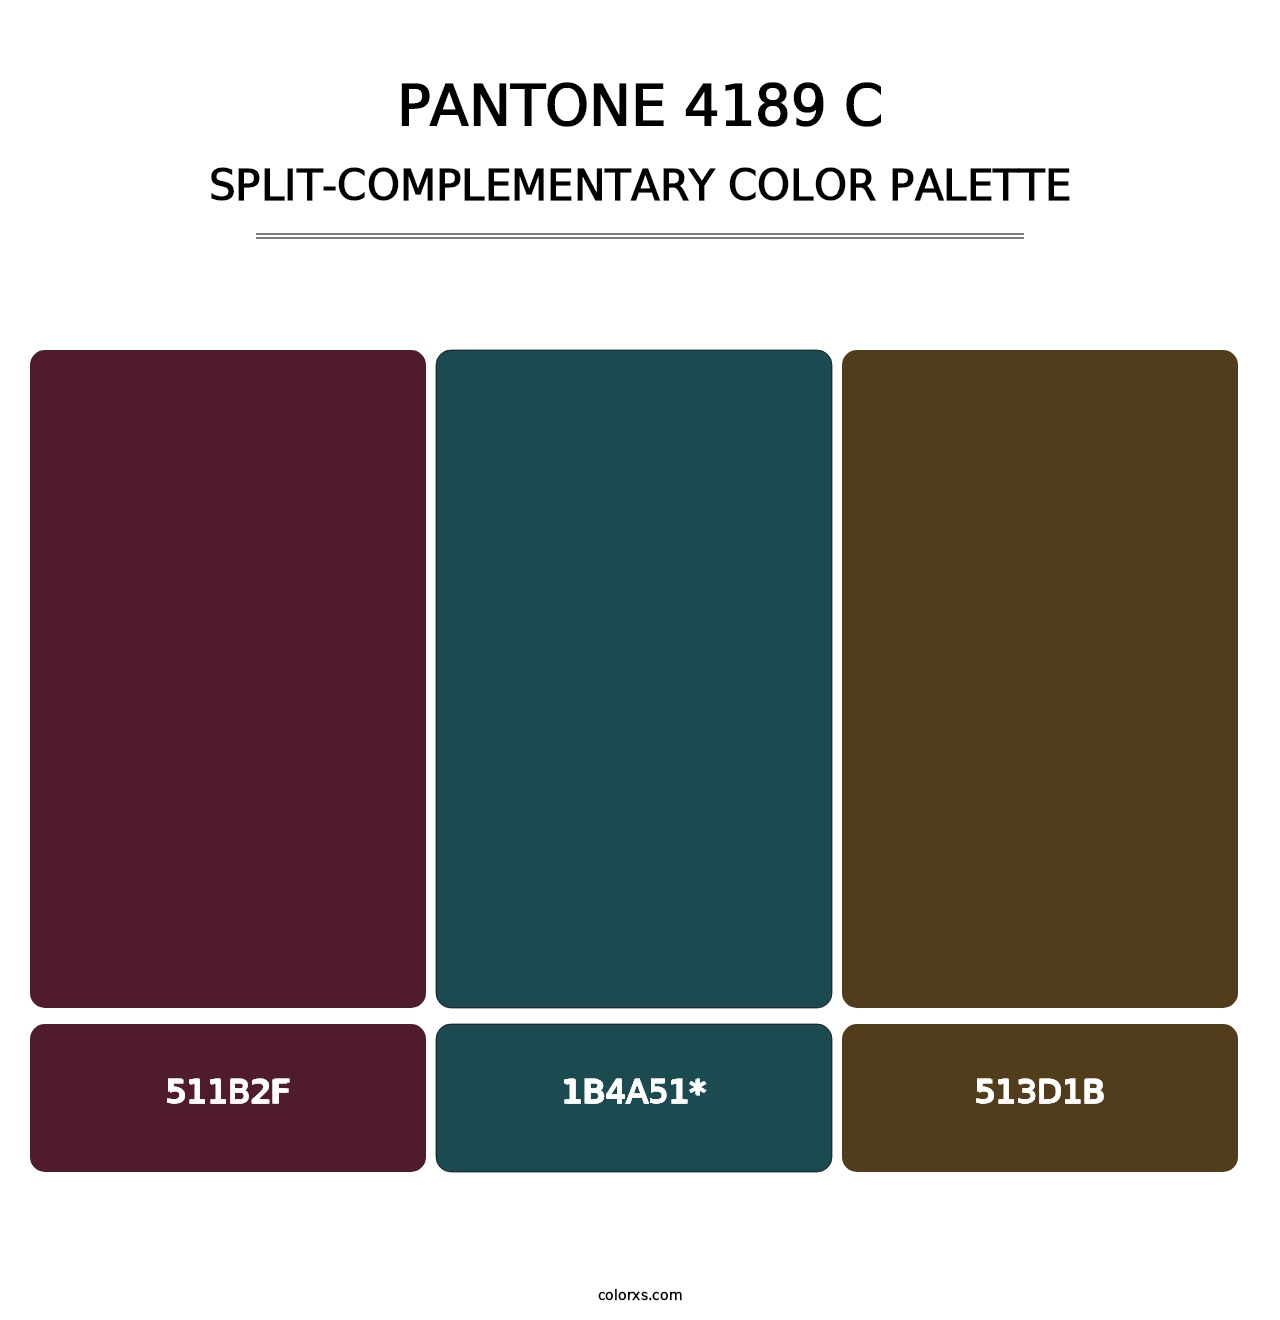 PANTONE 4189 C - Split-Complementary Color Palette